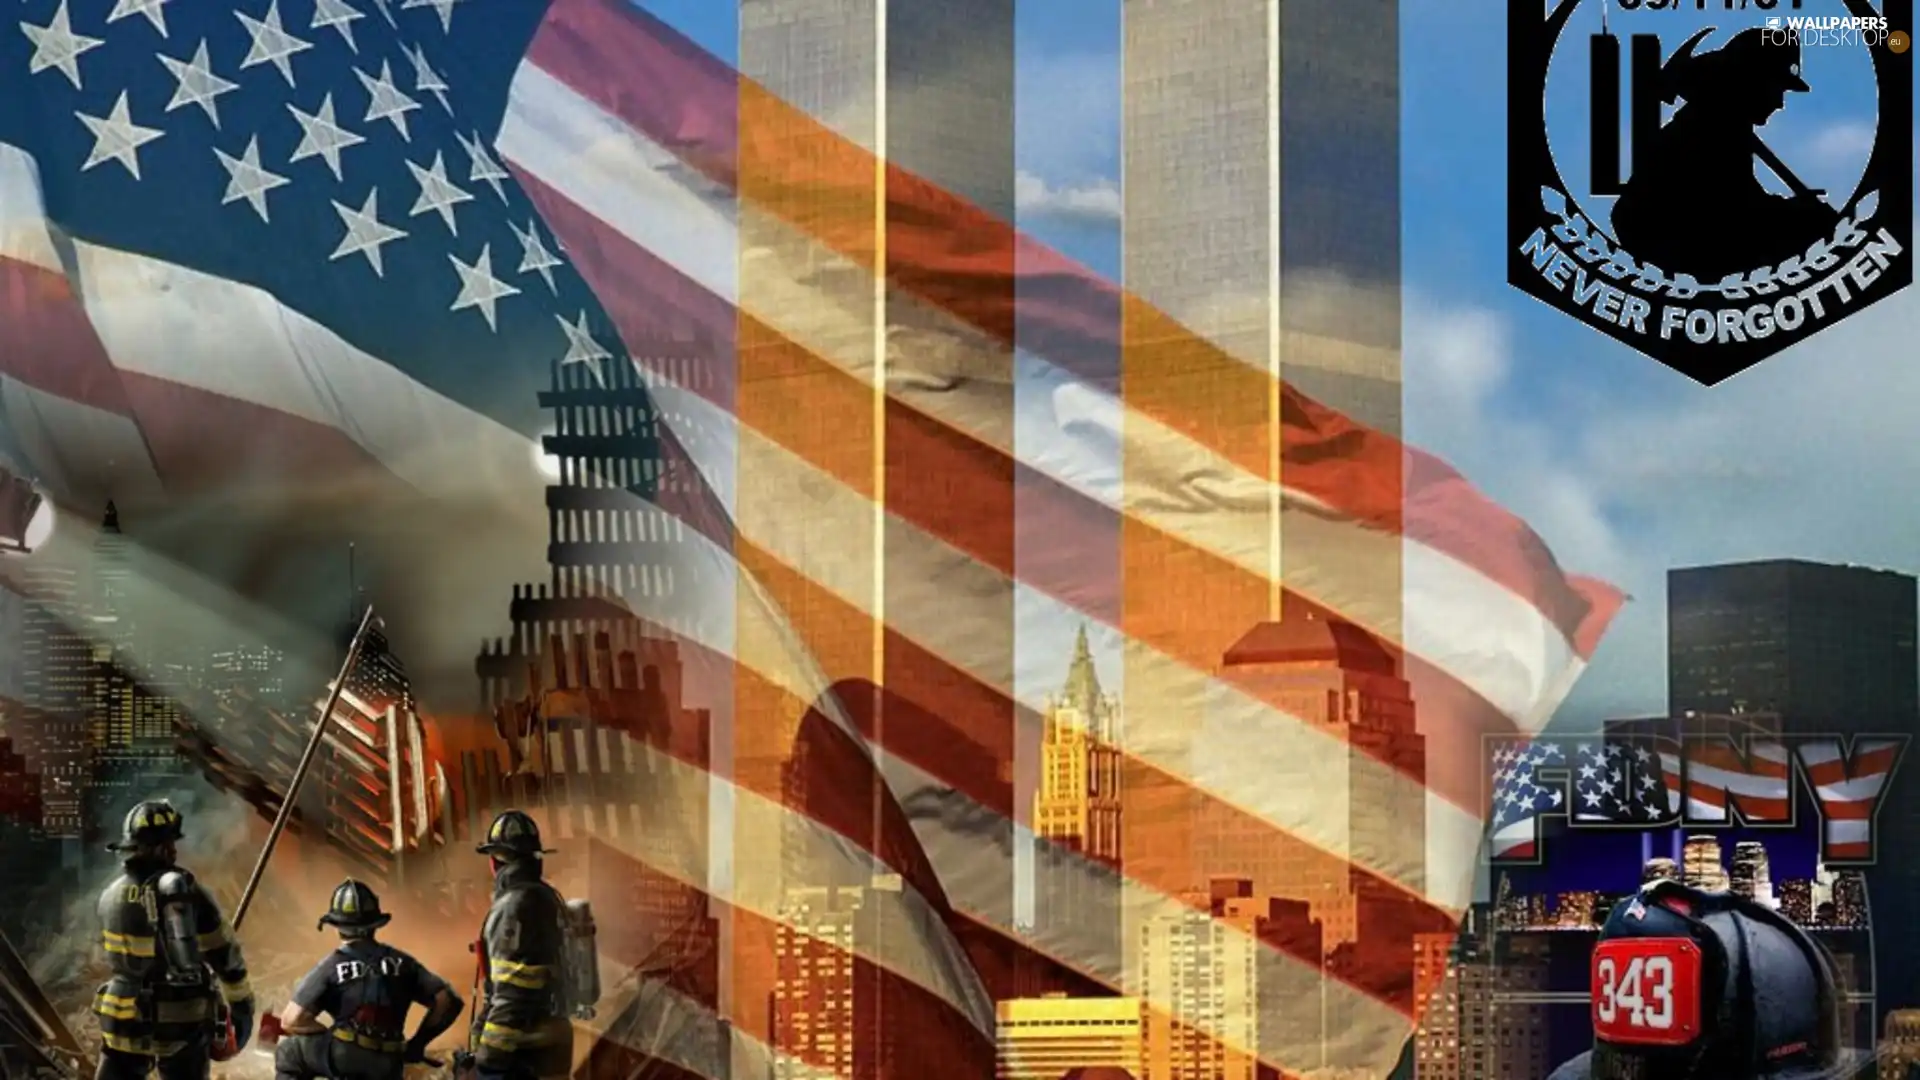 WTC, New York, no, forget, never, USA